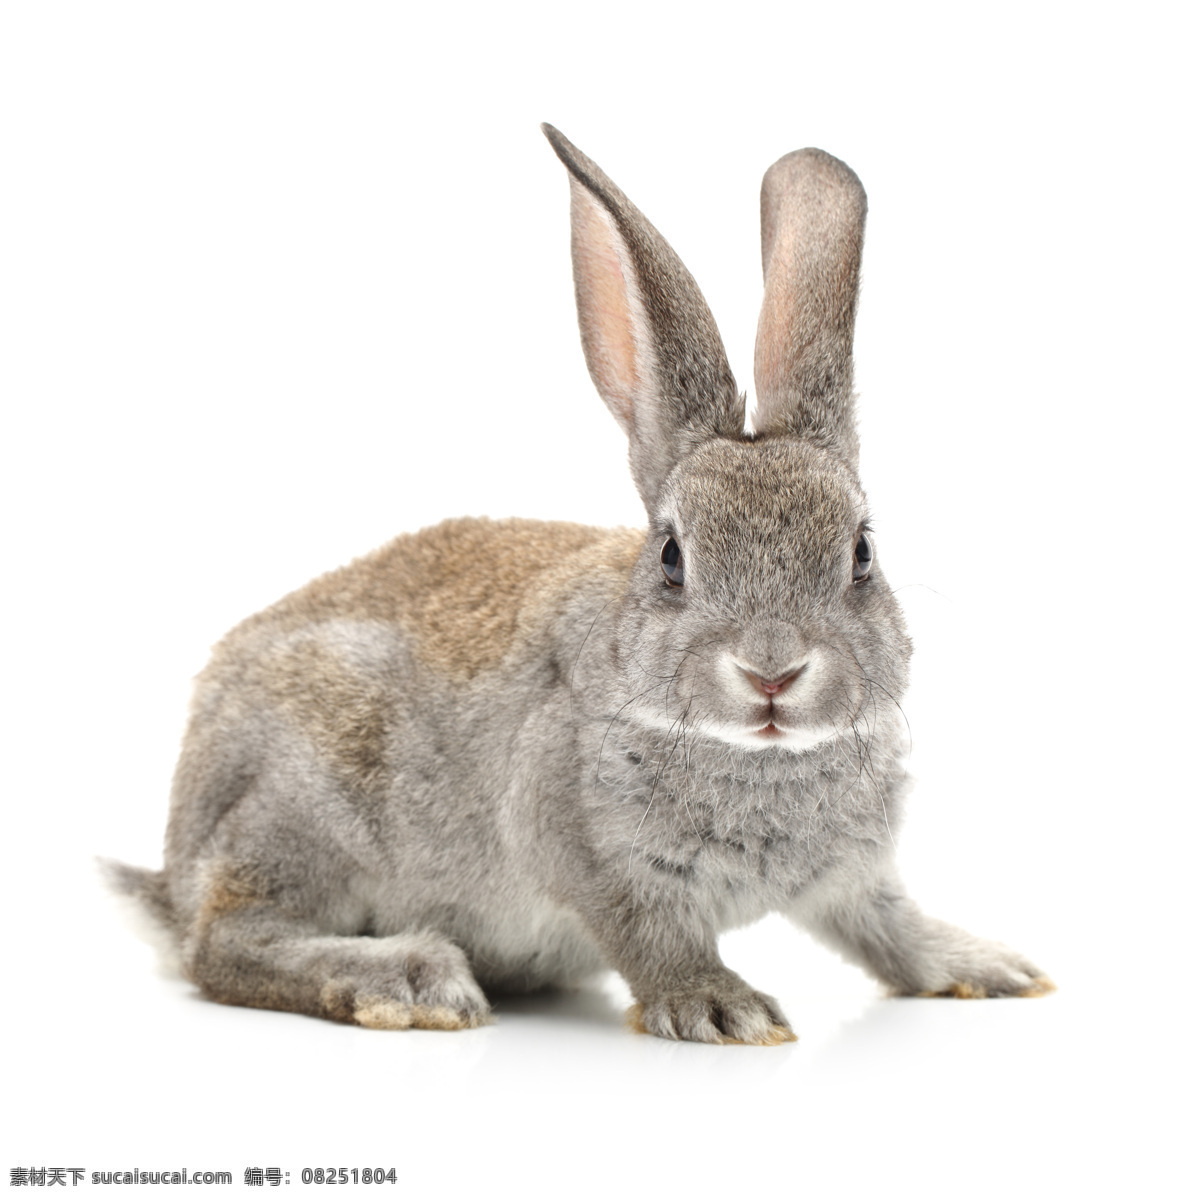 长耳朵 兔子跳 动物世界 动物 动物素材 野生动物摄影 生物世界 野生动物